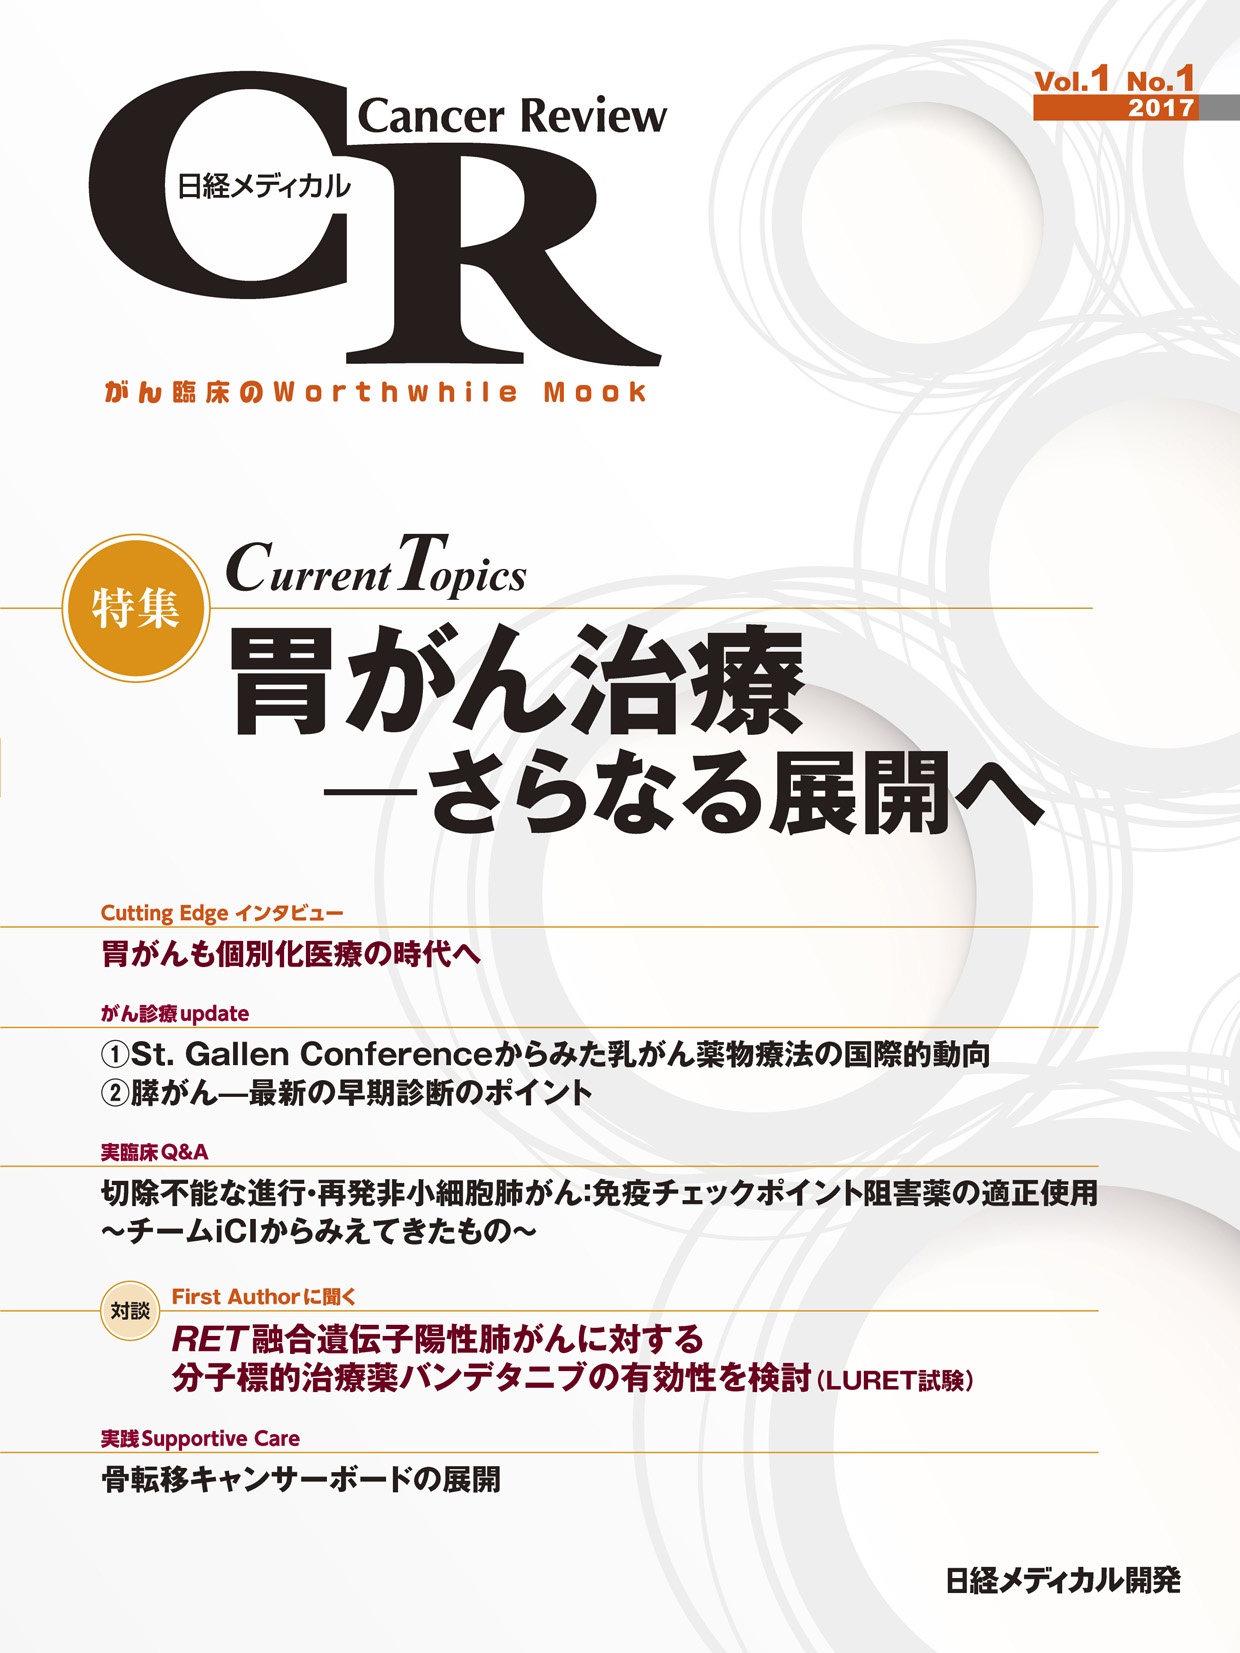 日経メディカル Cancer Review Vol.1 No.1 2017 